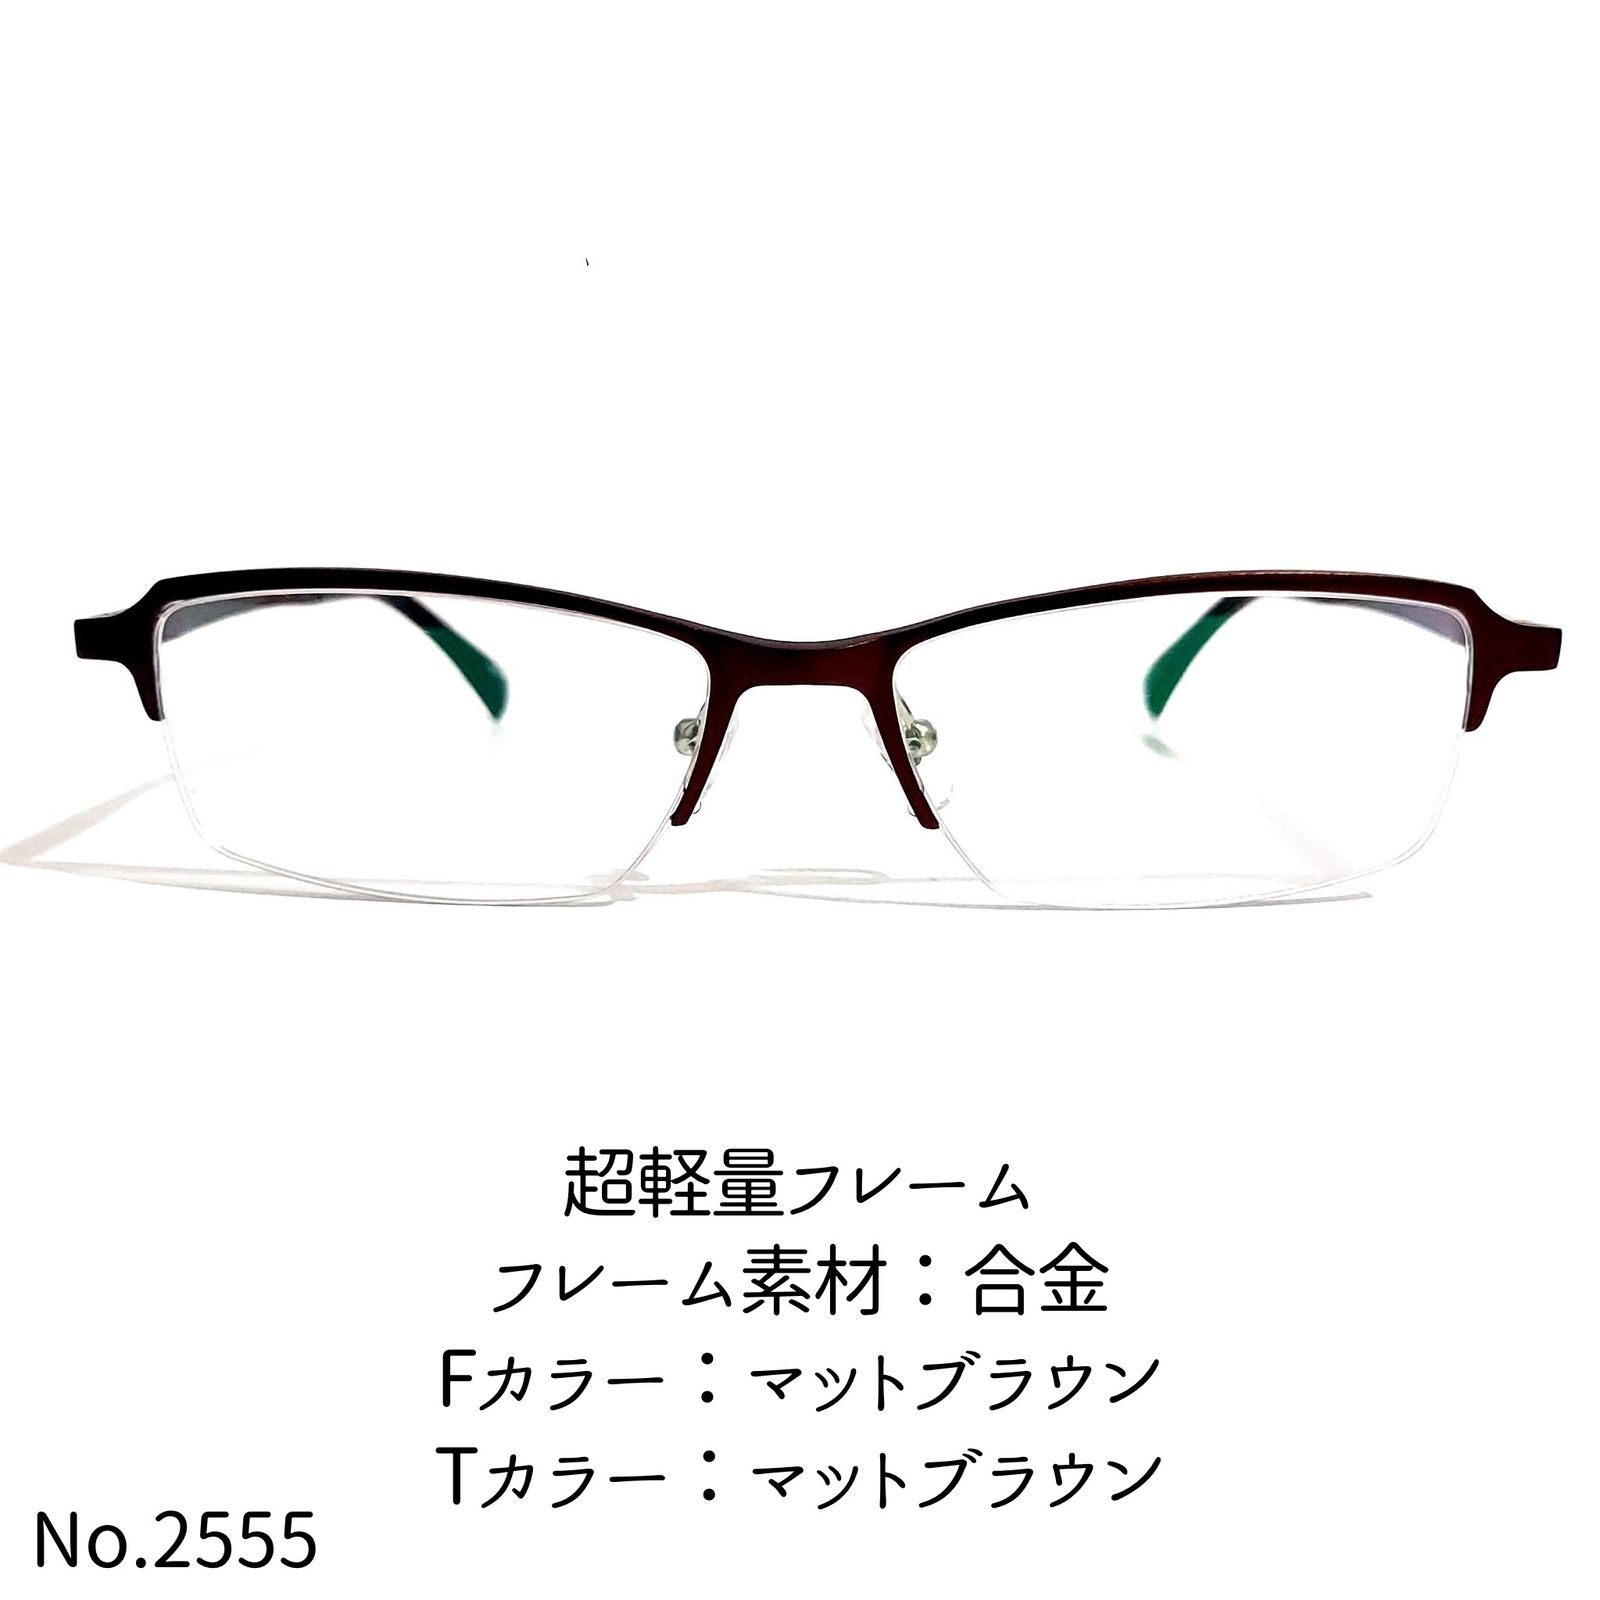 ユニセックスNo.2555-メガネ 超軽量フレーム【フレームのみ価格 